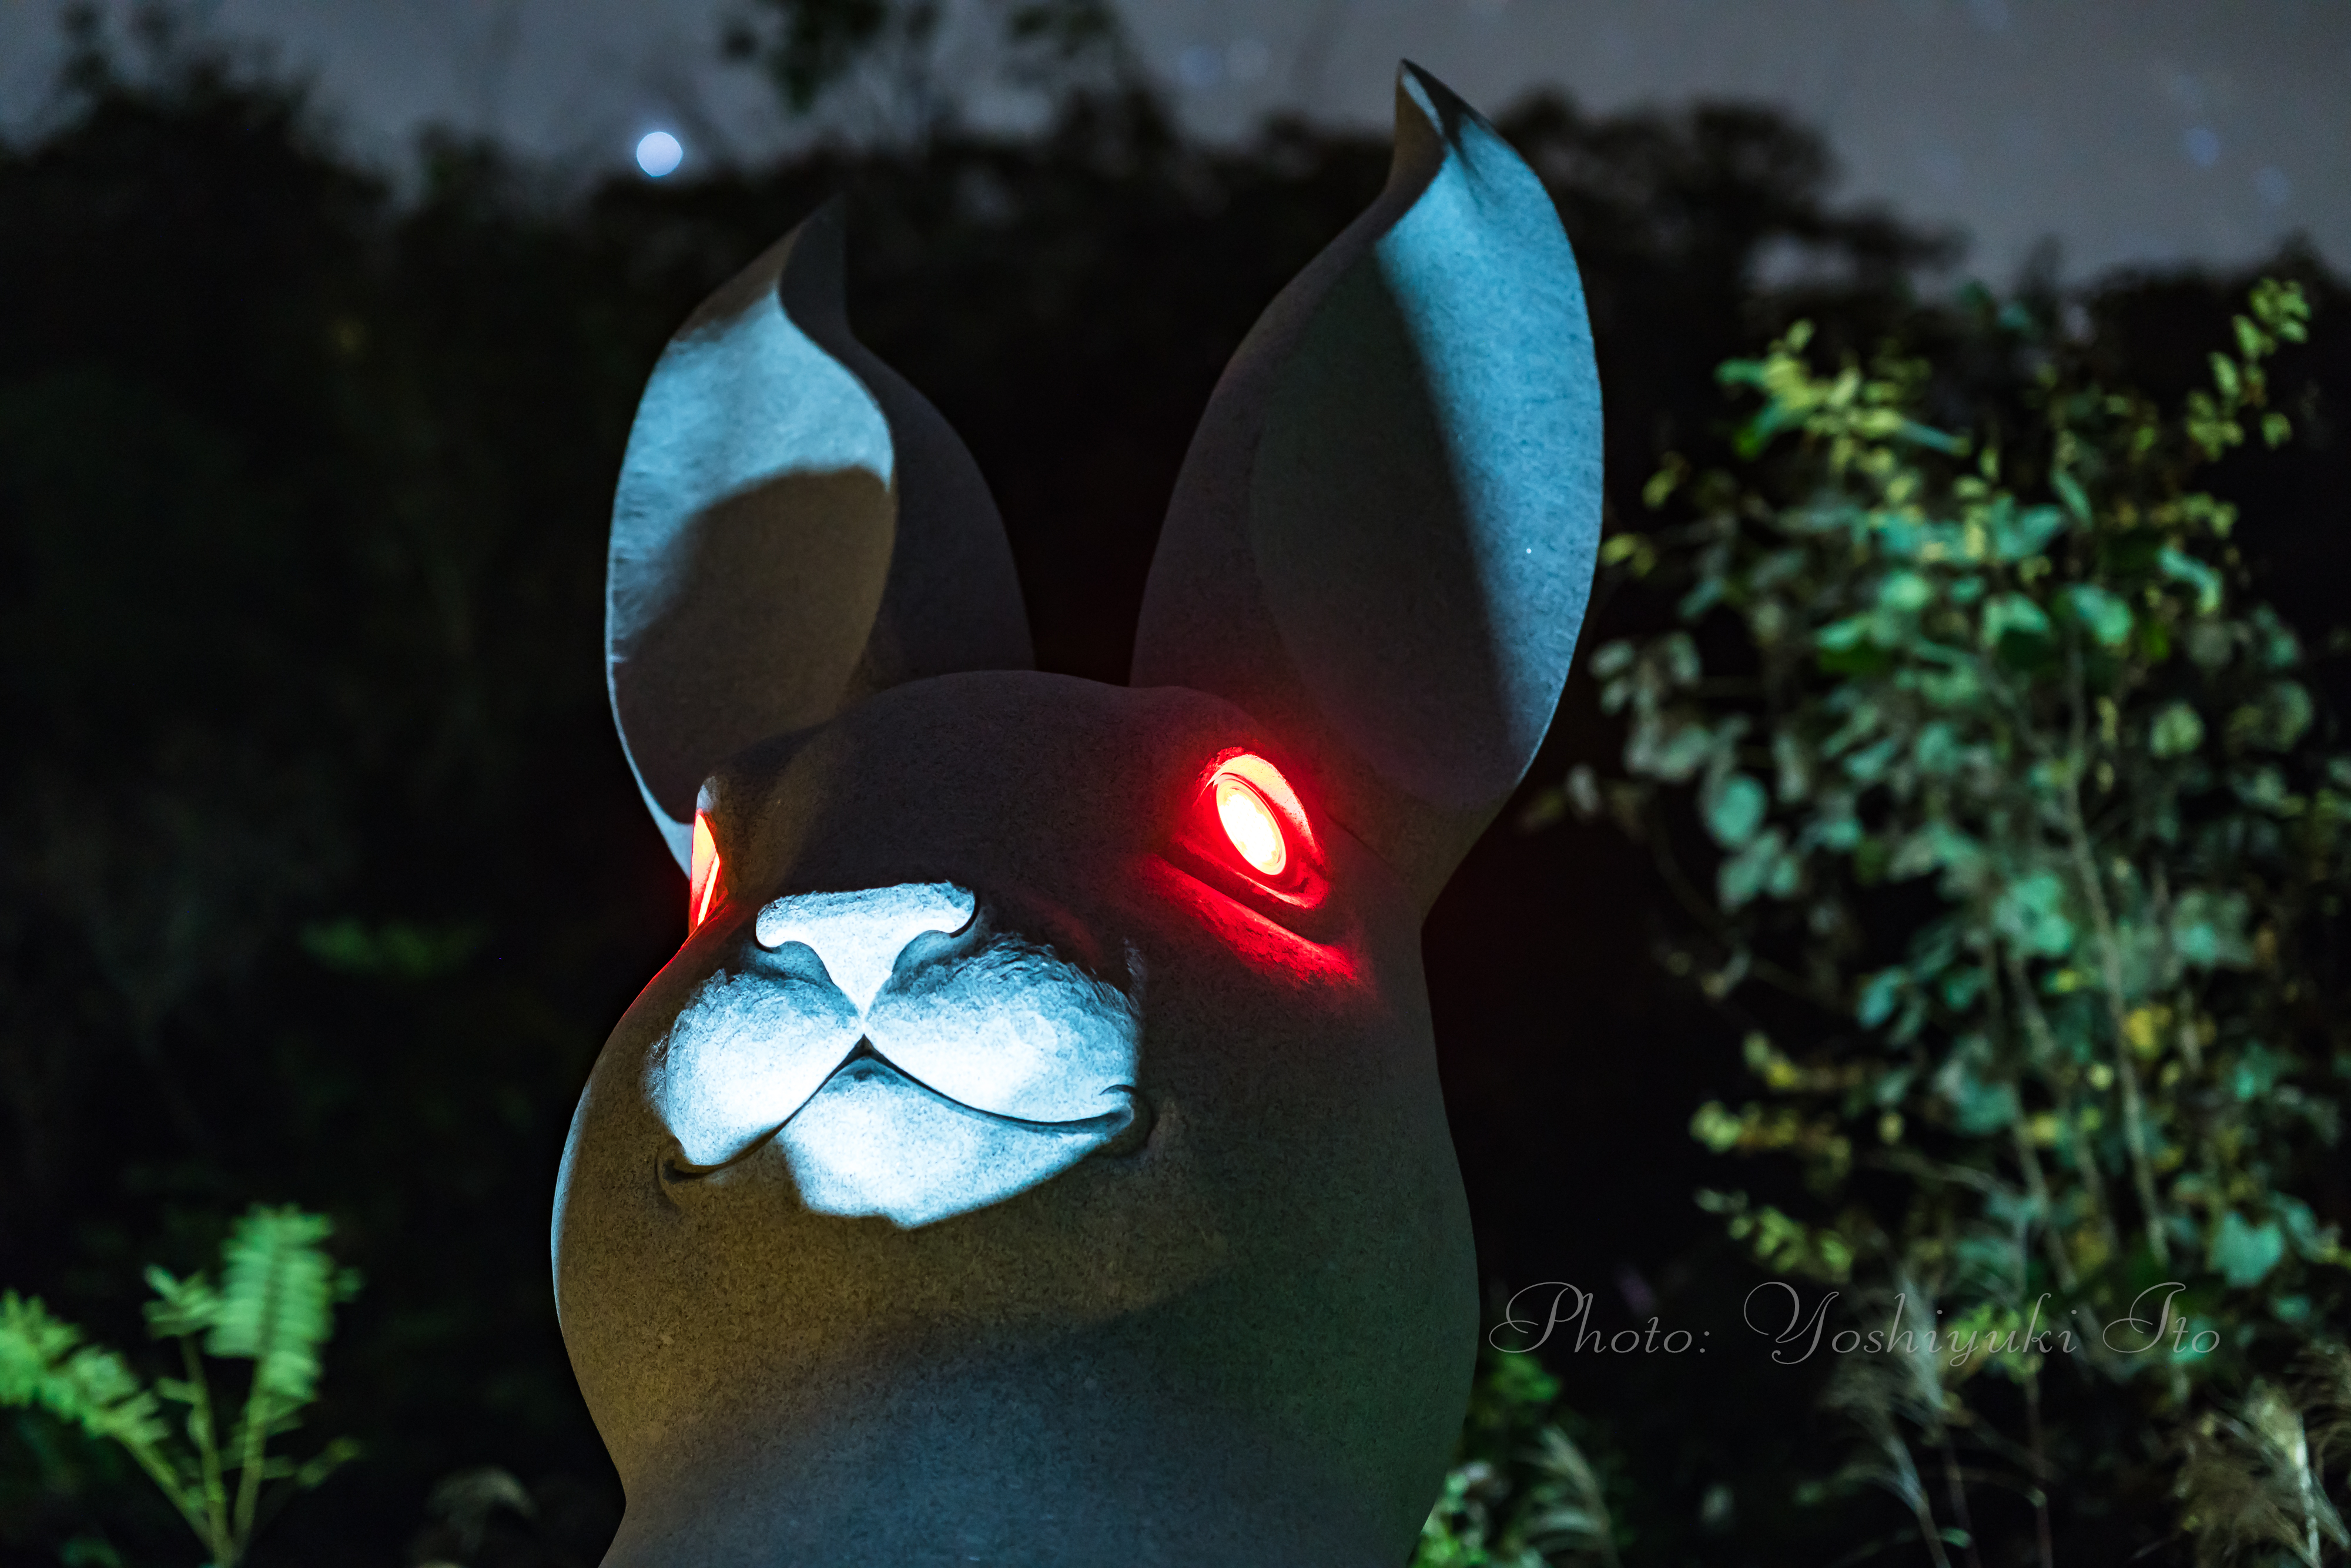 夜の新スポット長谷寺のウサギ観音の光る赤い目 旅館番頭の佐渡観光情報ブログ